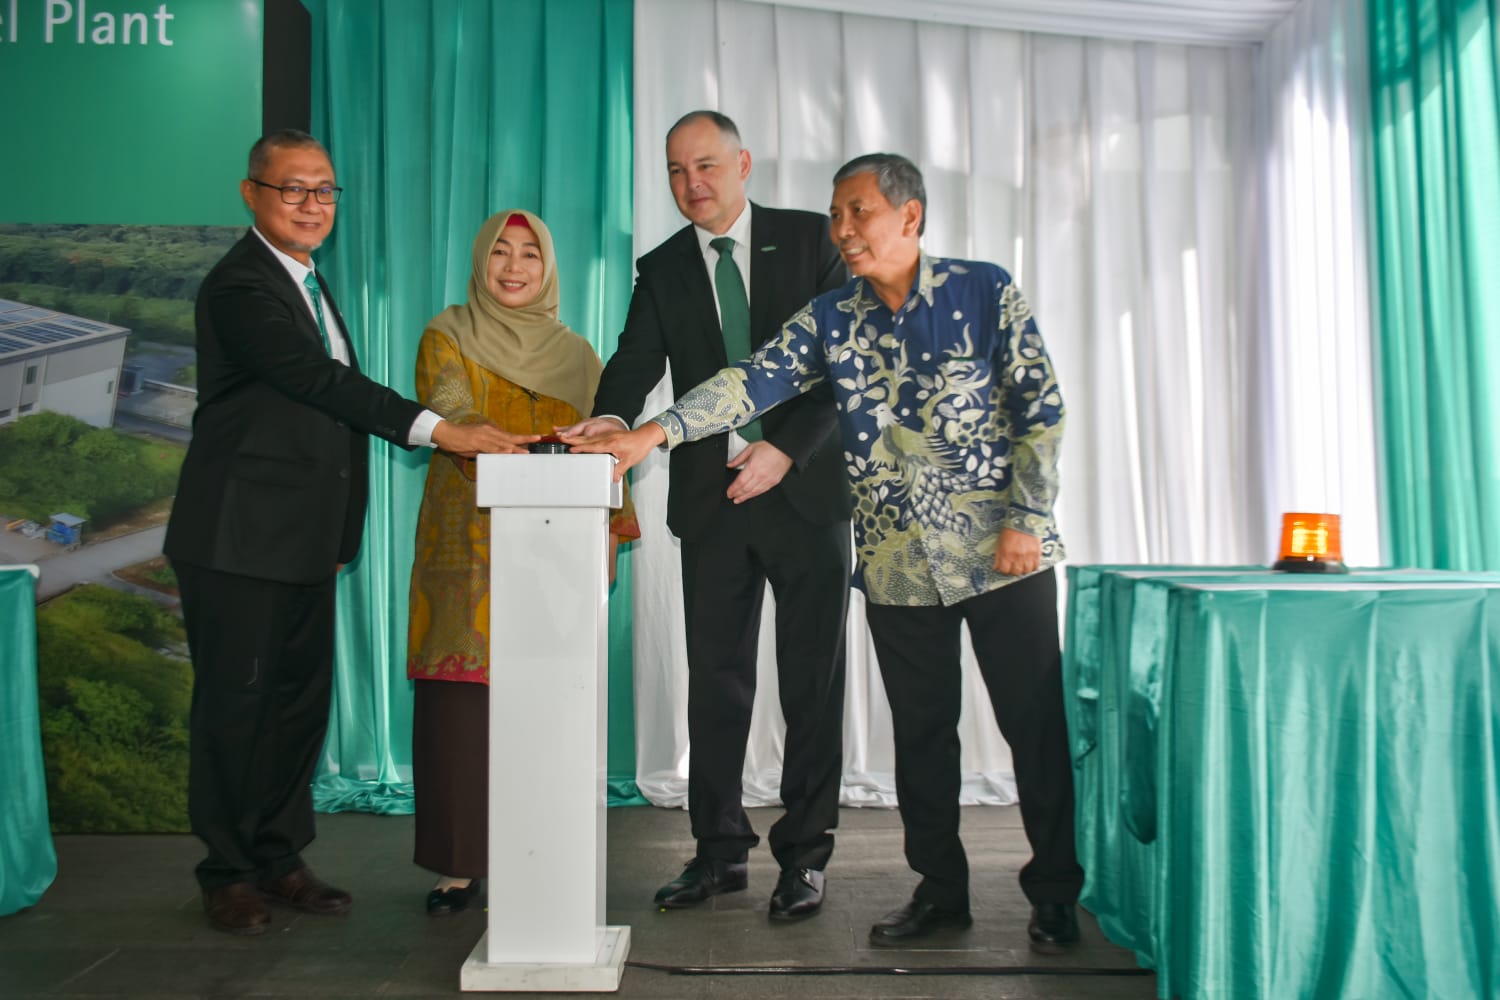 Dukung Industri Ramah Lingkungan, B. Braun Indonesia Inisiatif Gunakan Energi Terbarukan